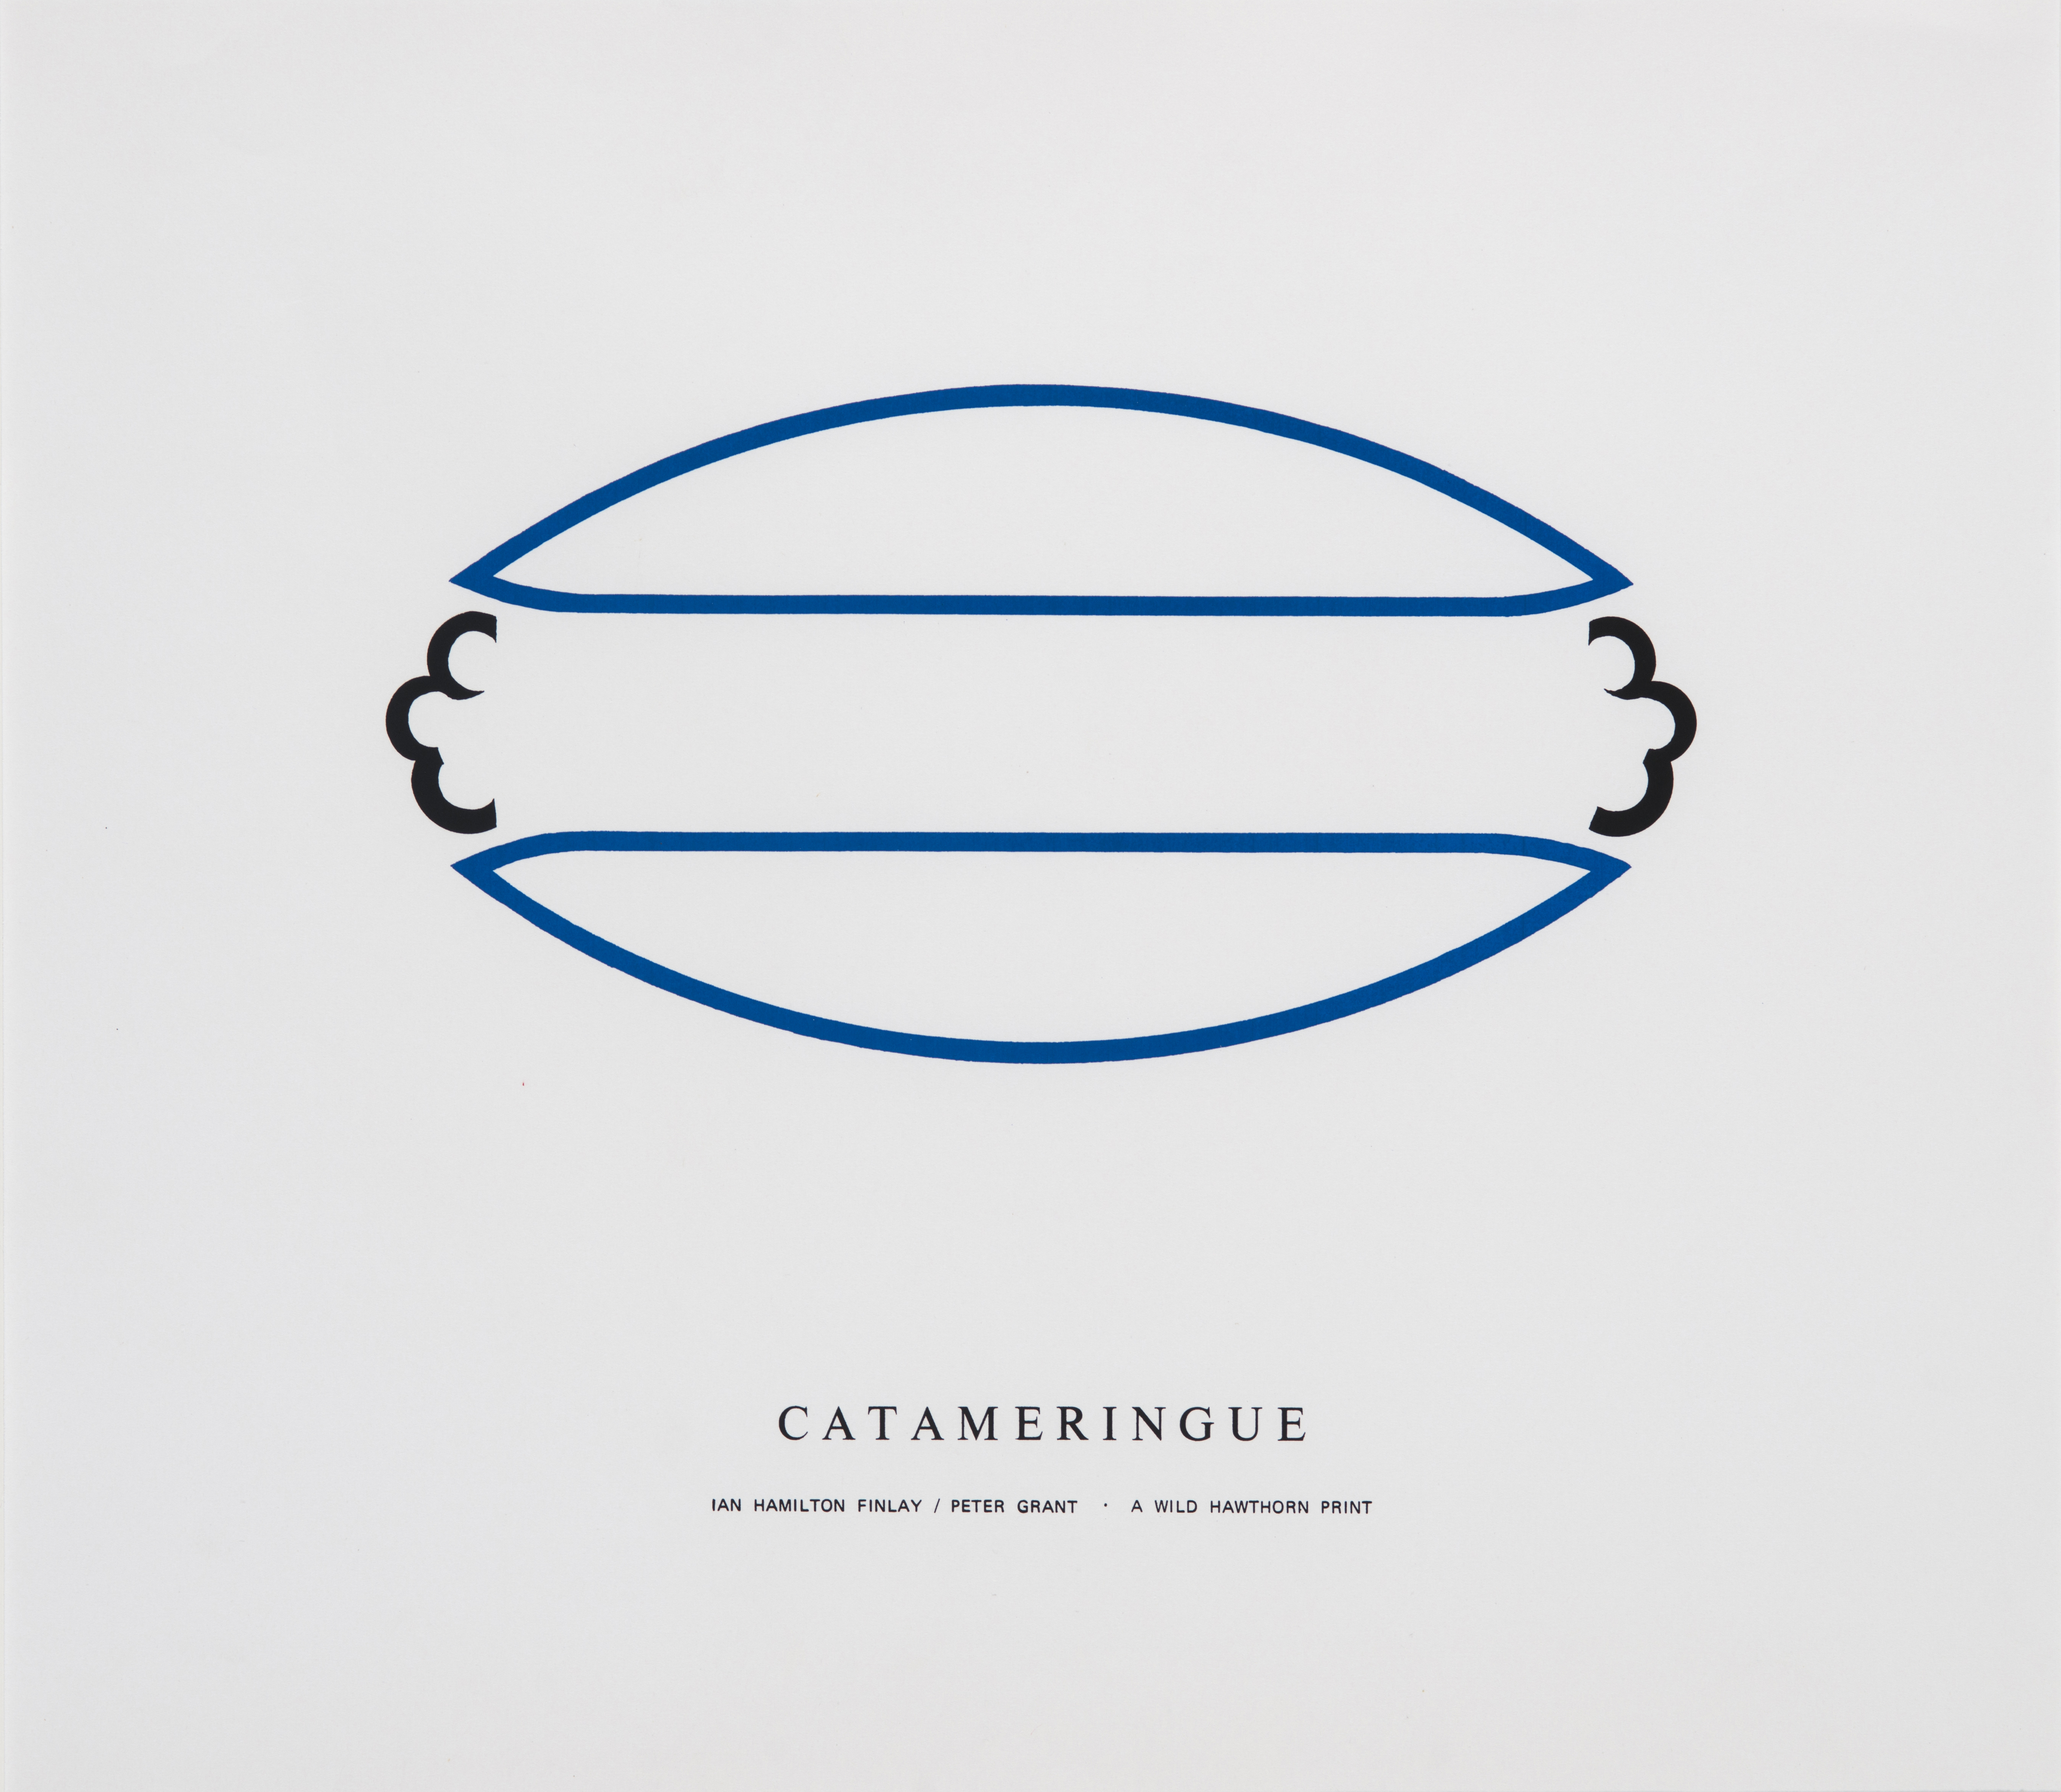 Catameringue (1970)